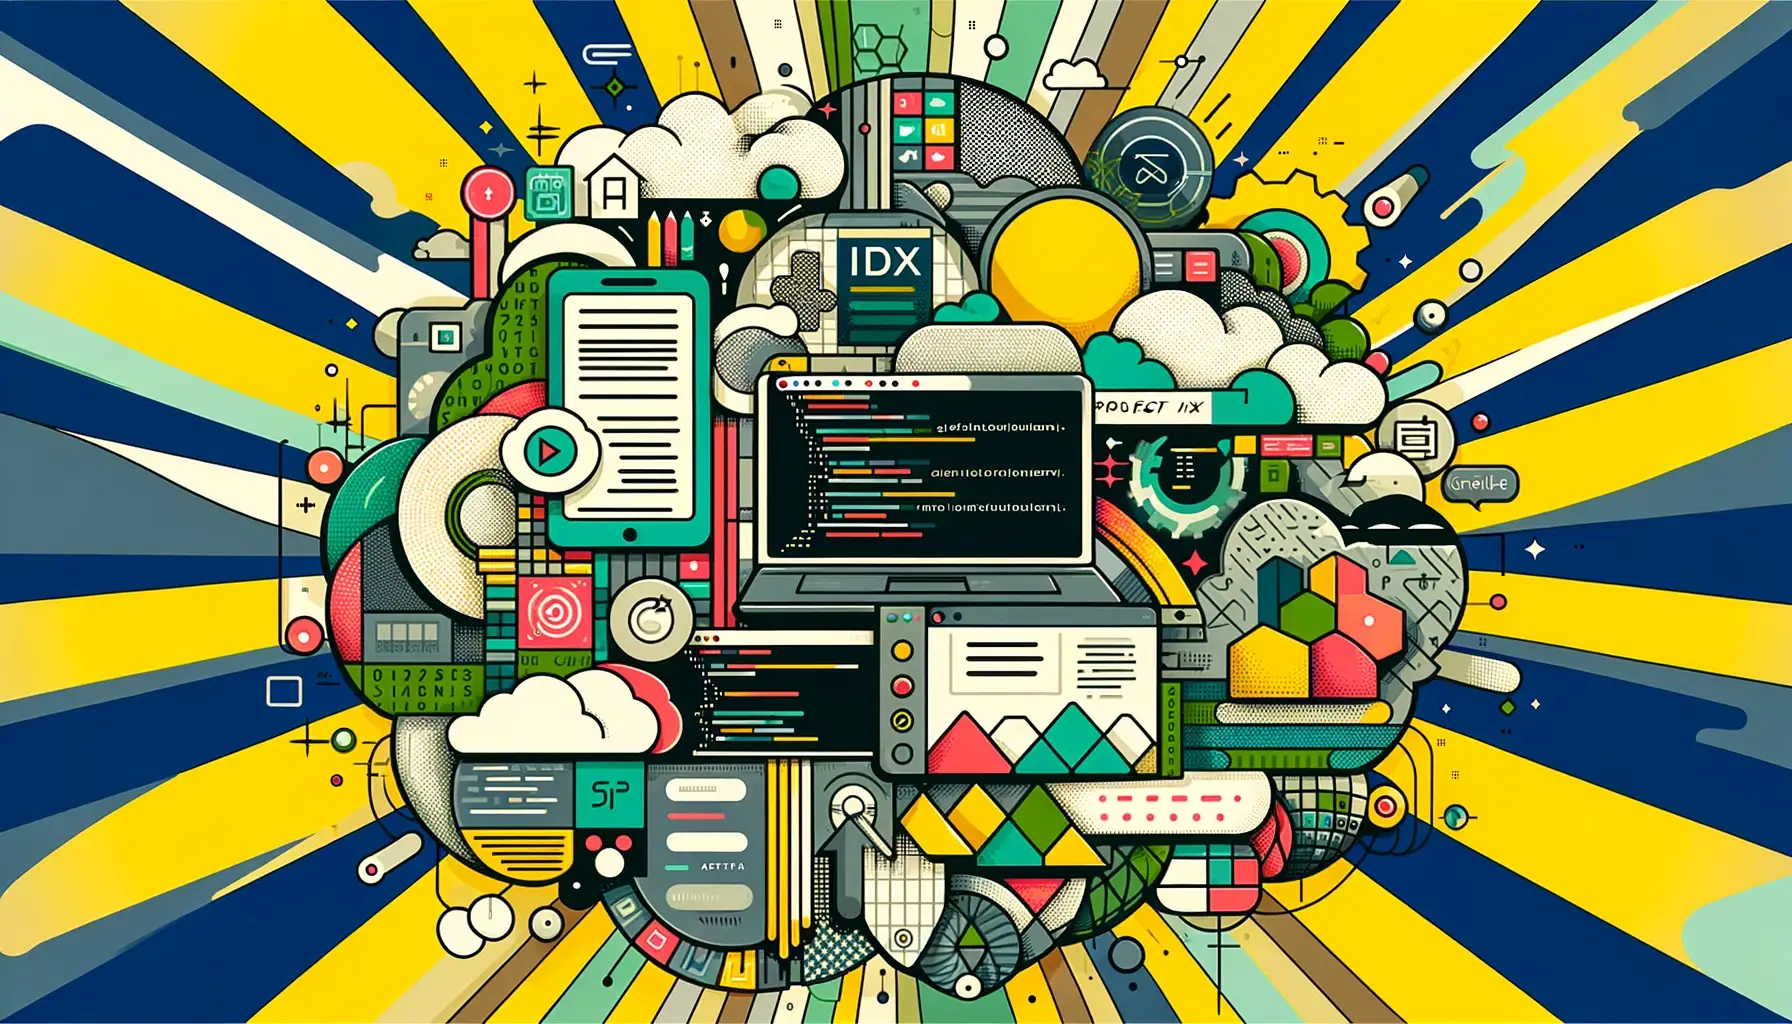 Elementos de desenvolvimento de software e tecnologia com ícones de nuvens, janelas de interface de aplicativos e linhas de código de programação